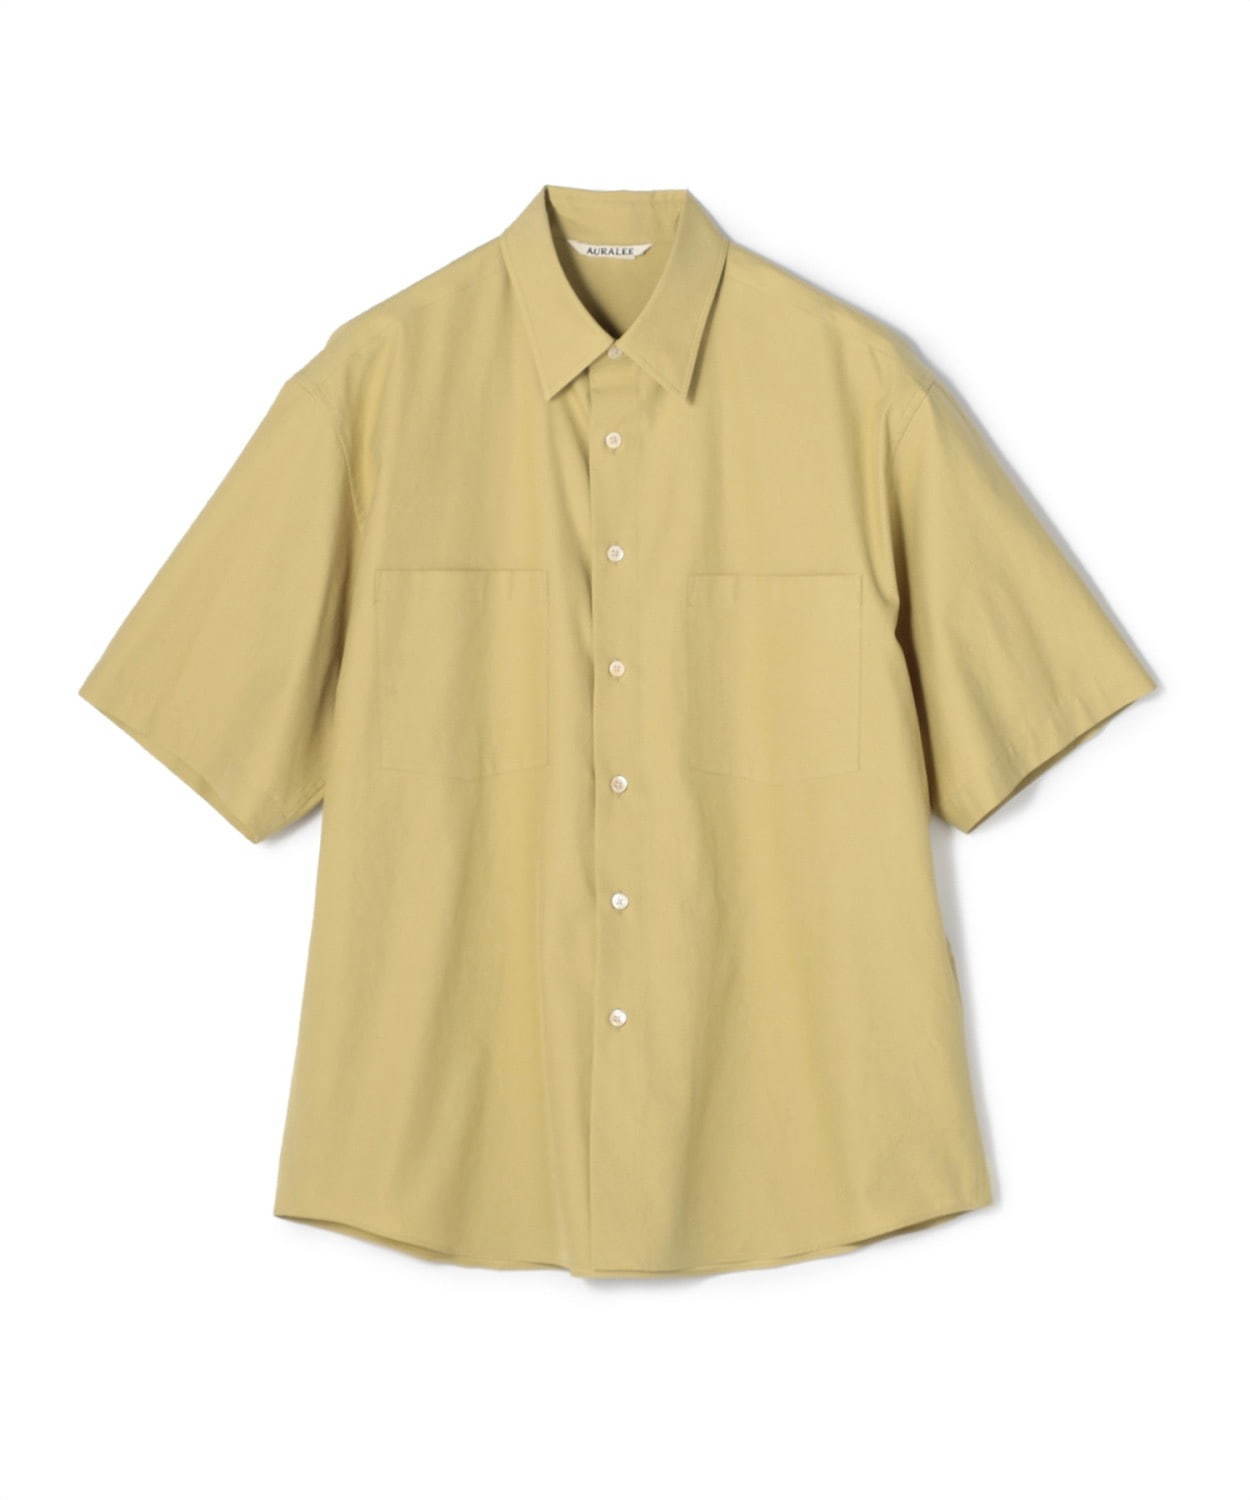 おすすめメンズシャツ20年春夏 - 人気ブランドの無地シャツから柄シャツまで | 写真